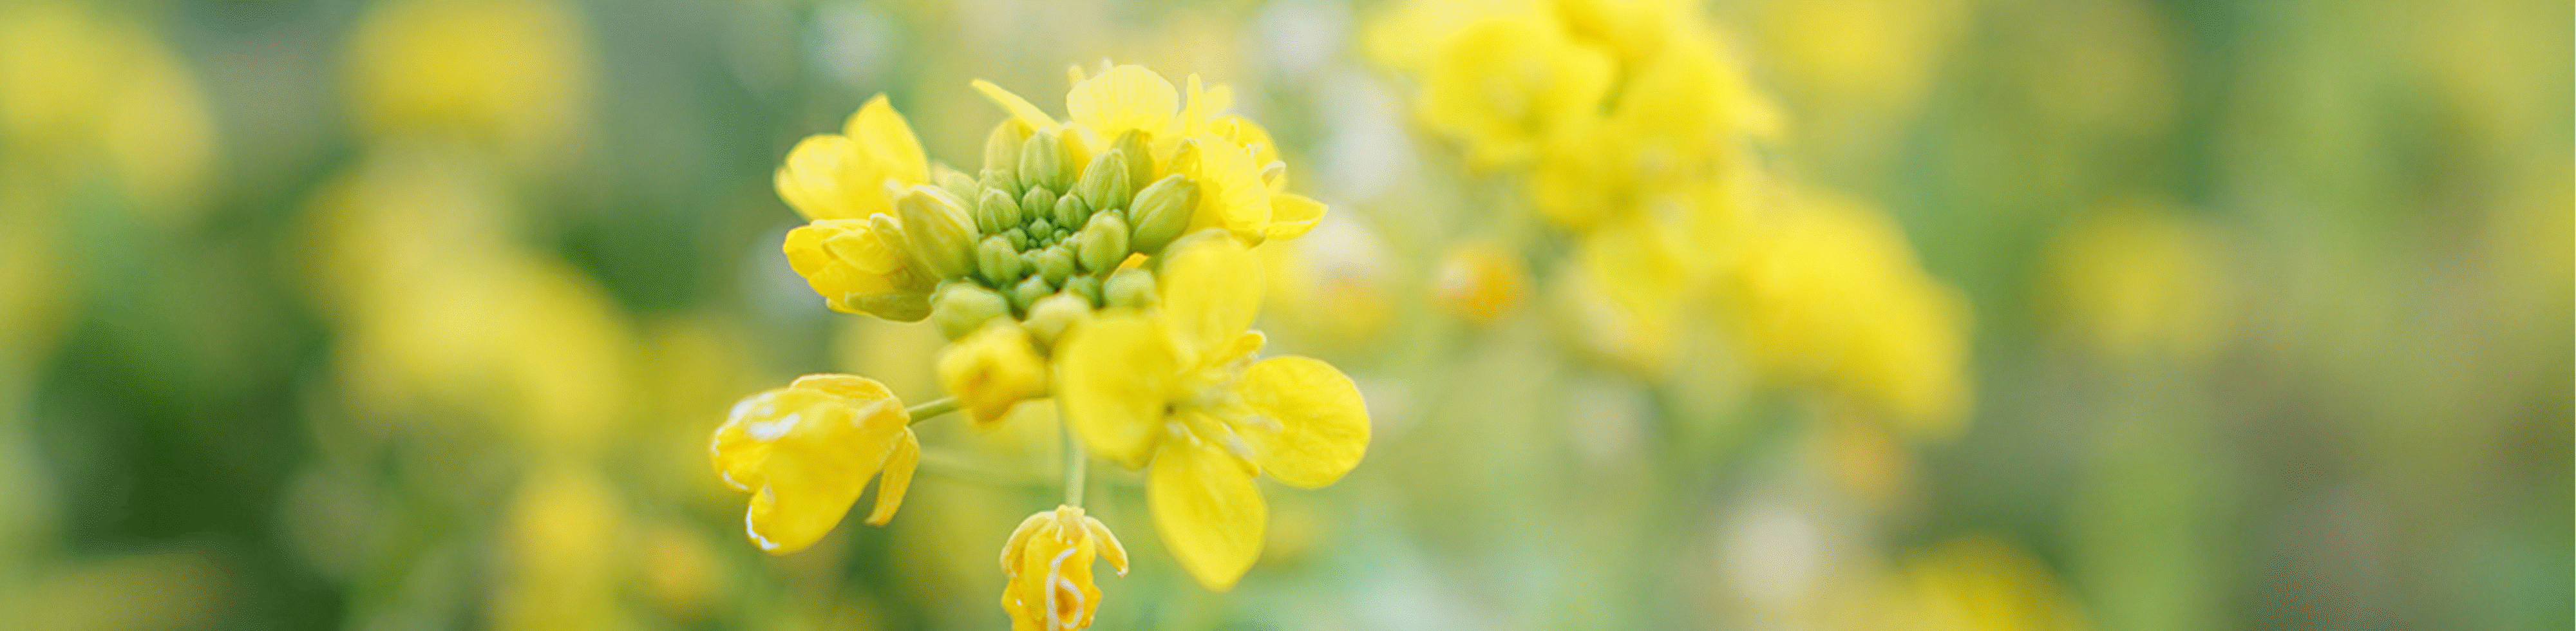 Bild på gula blommor